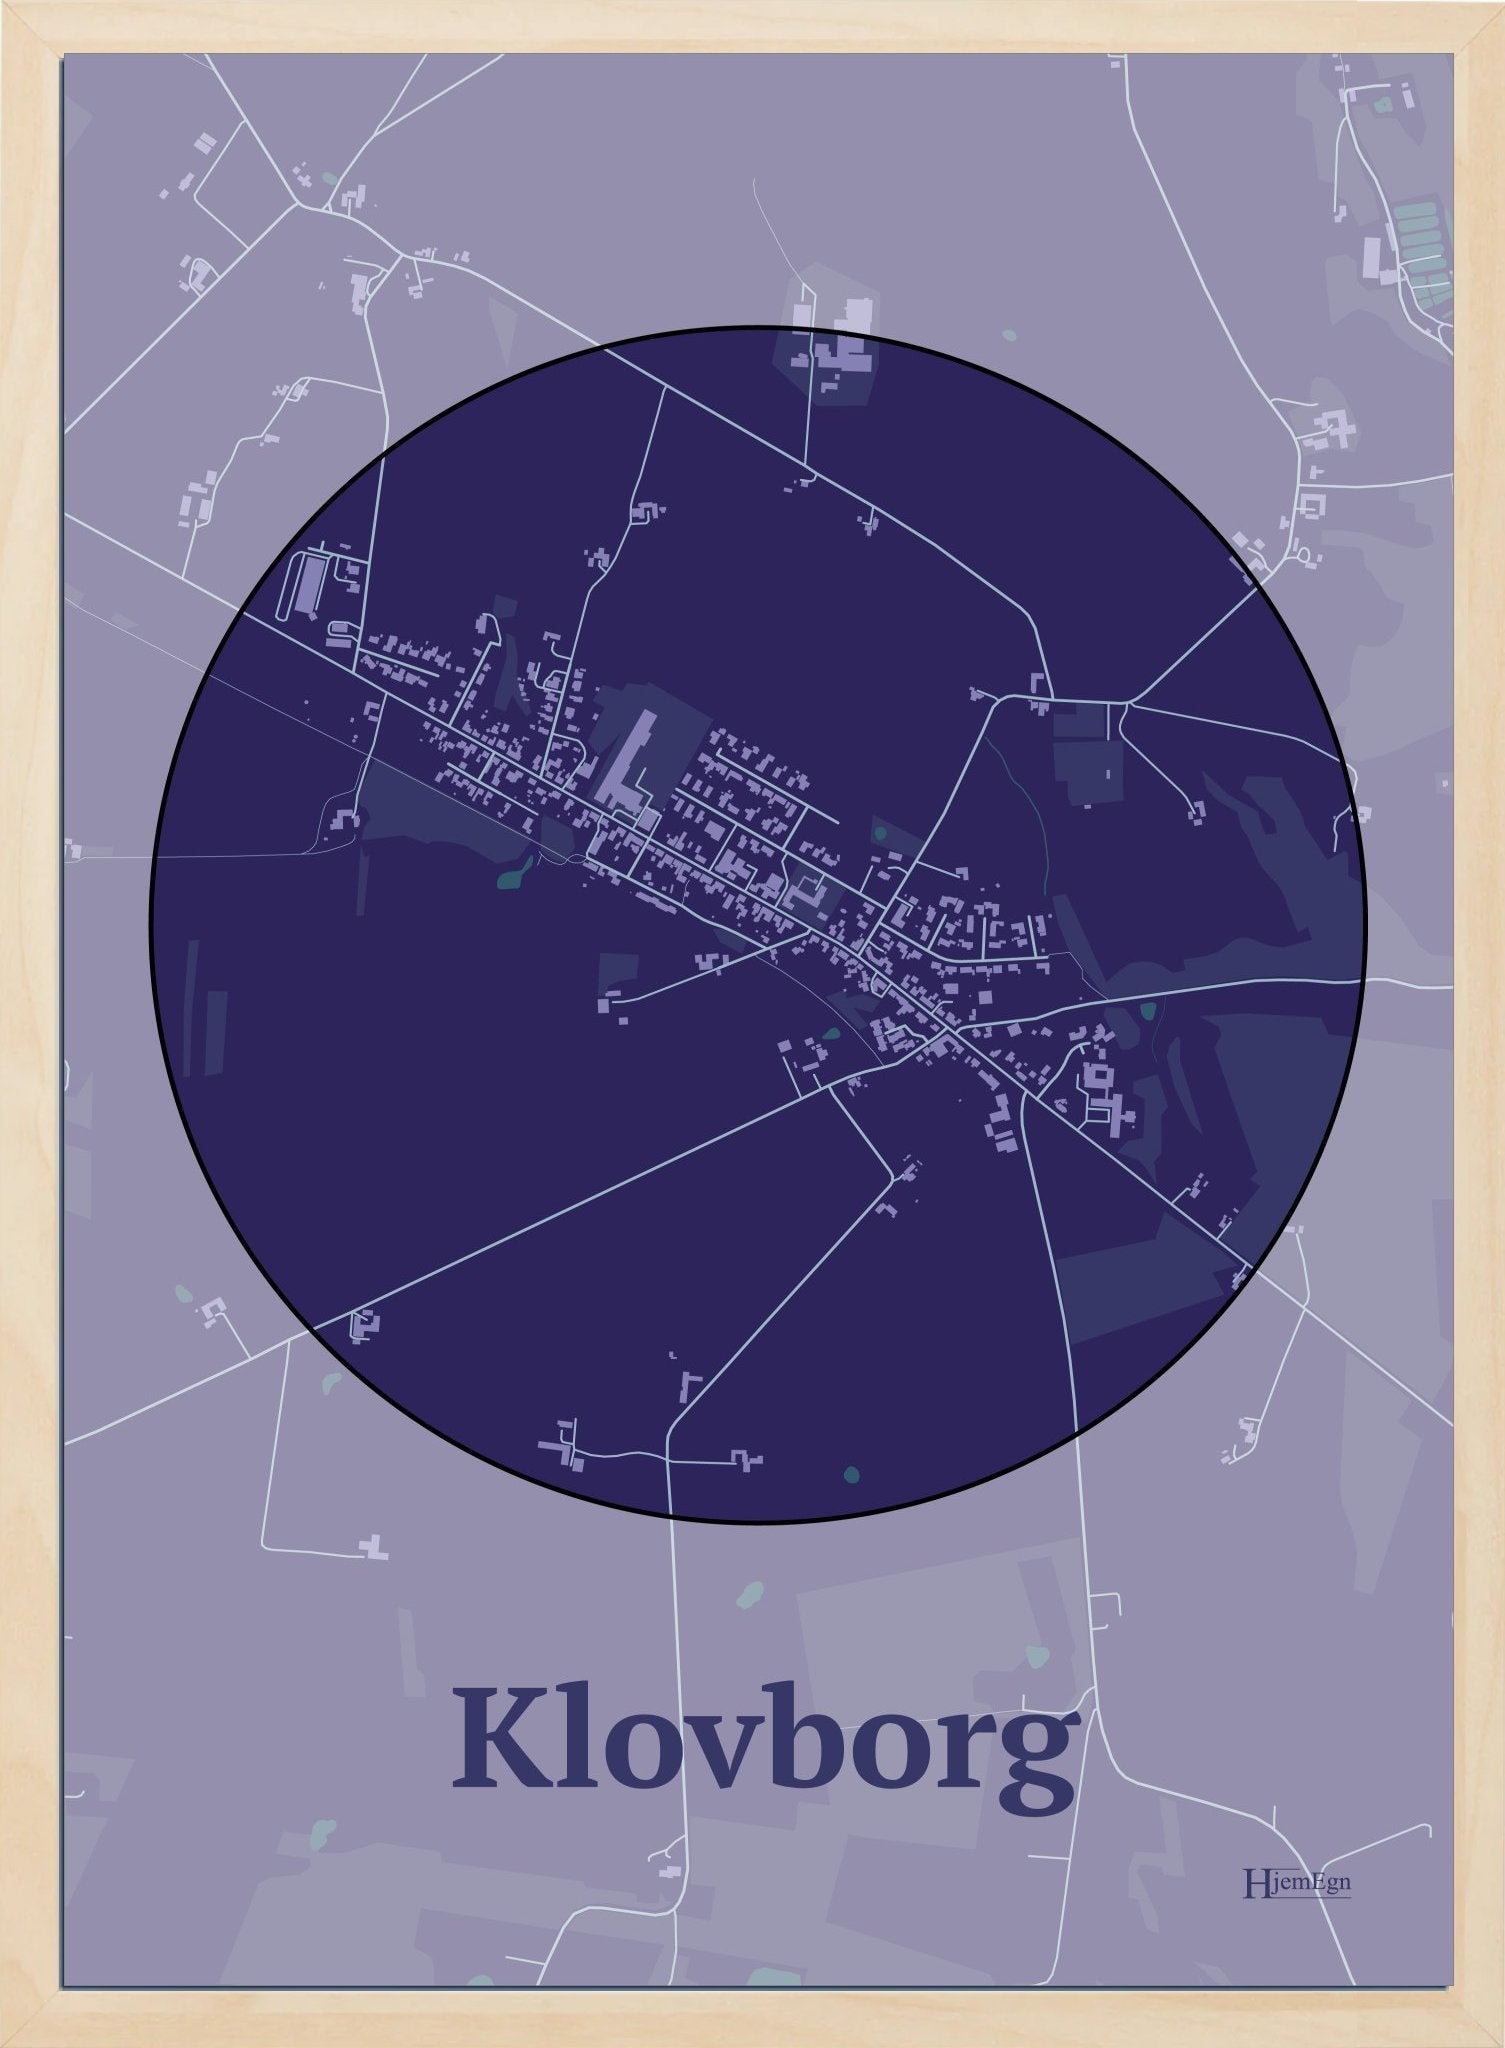 Klovborg plakat i farve mørk lilla og HjemEgn.dk design centrum. Design bykort for Klovborg